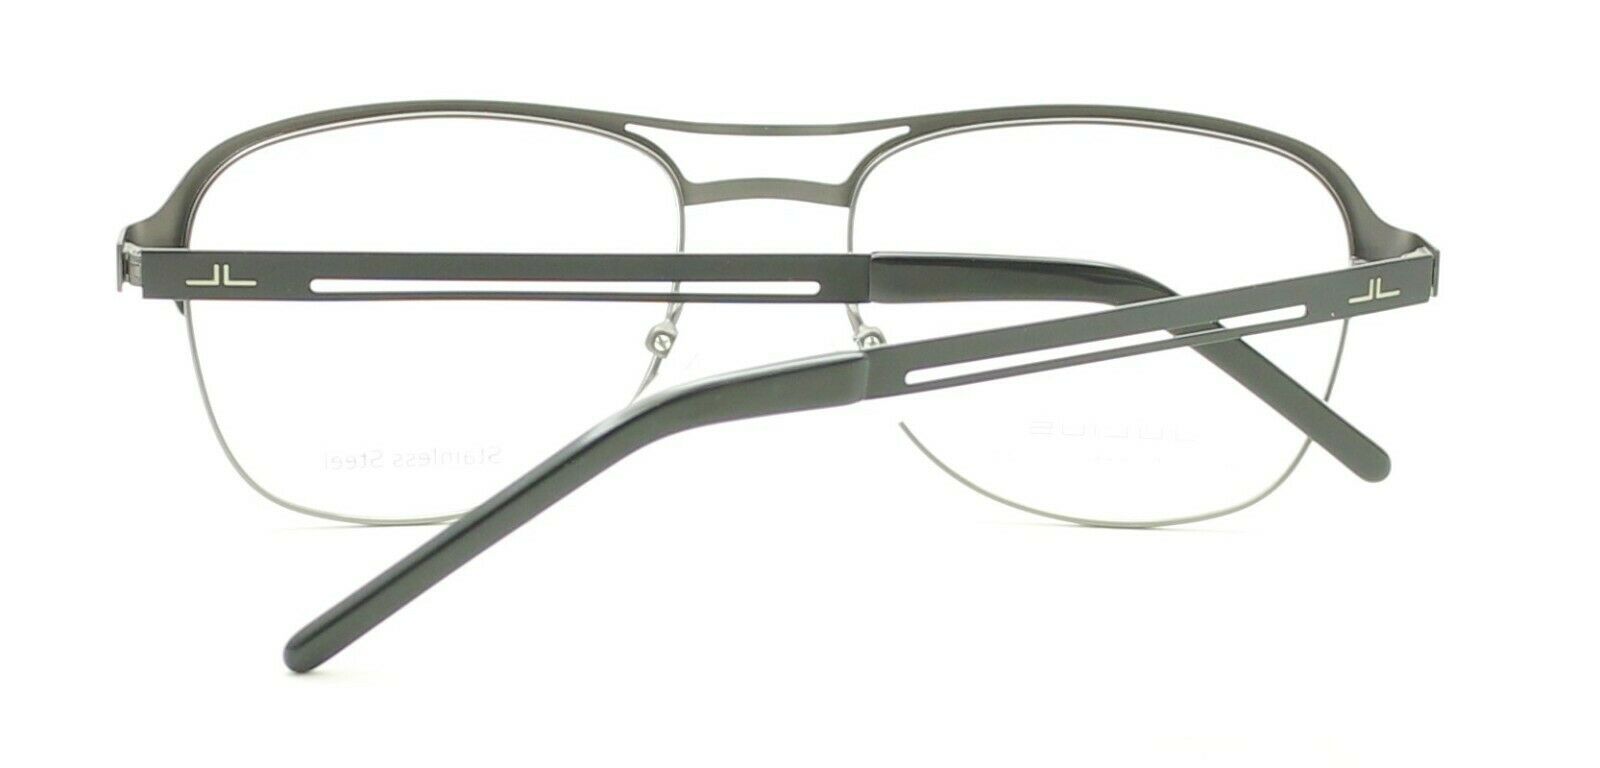 Van dienen stuk JULIUS JUBM15 BG 53mm Eyewear FRAMES Glasses RX Optical Eyeglasses New -  TRUSTED - GGV Eyewear